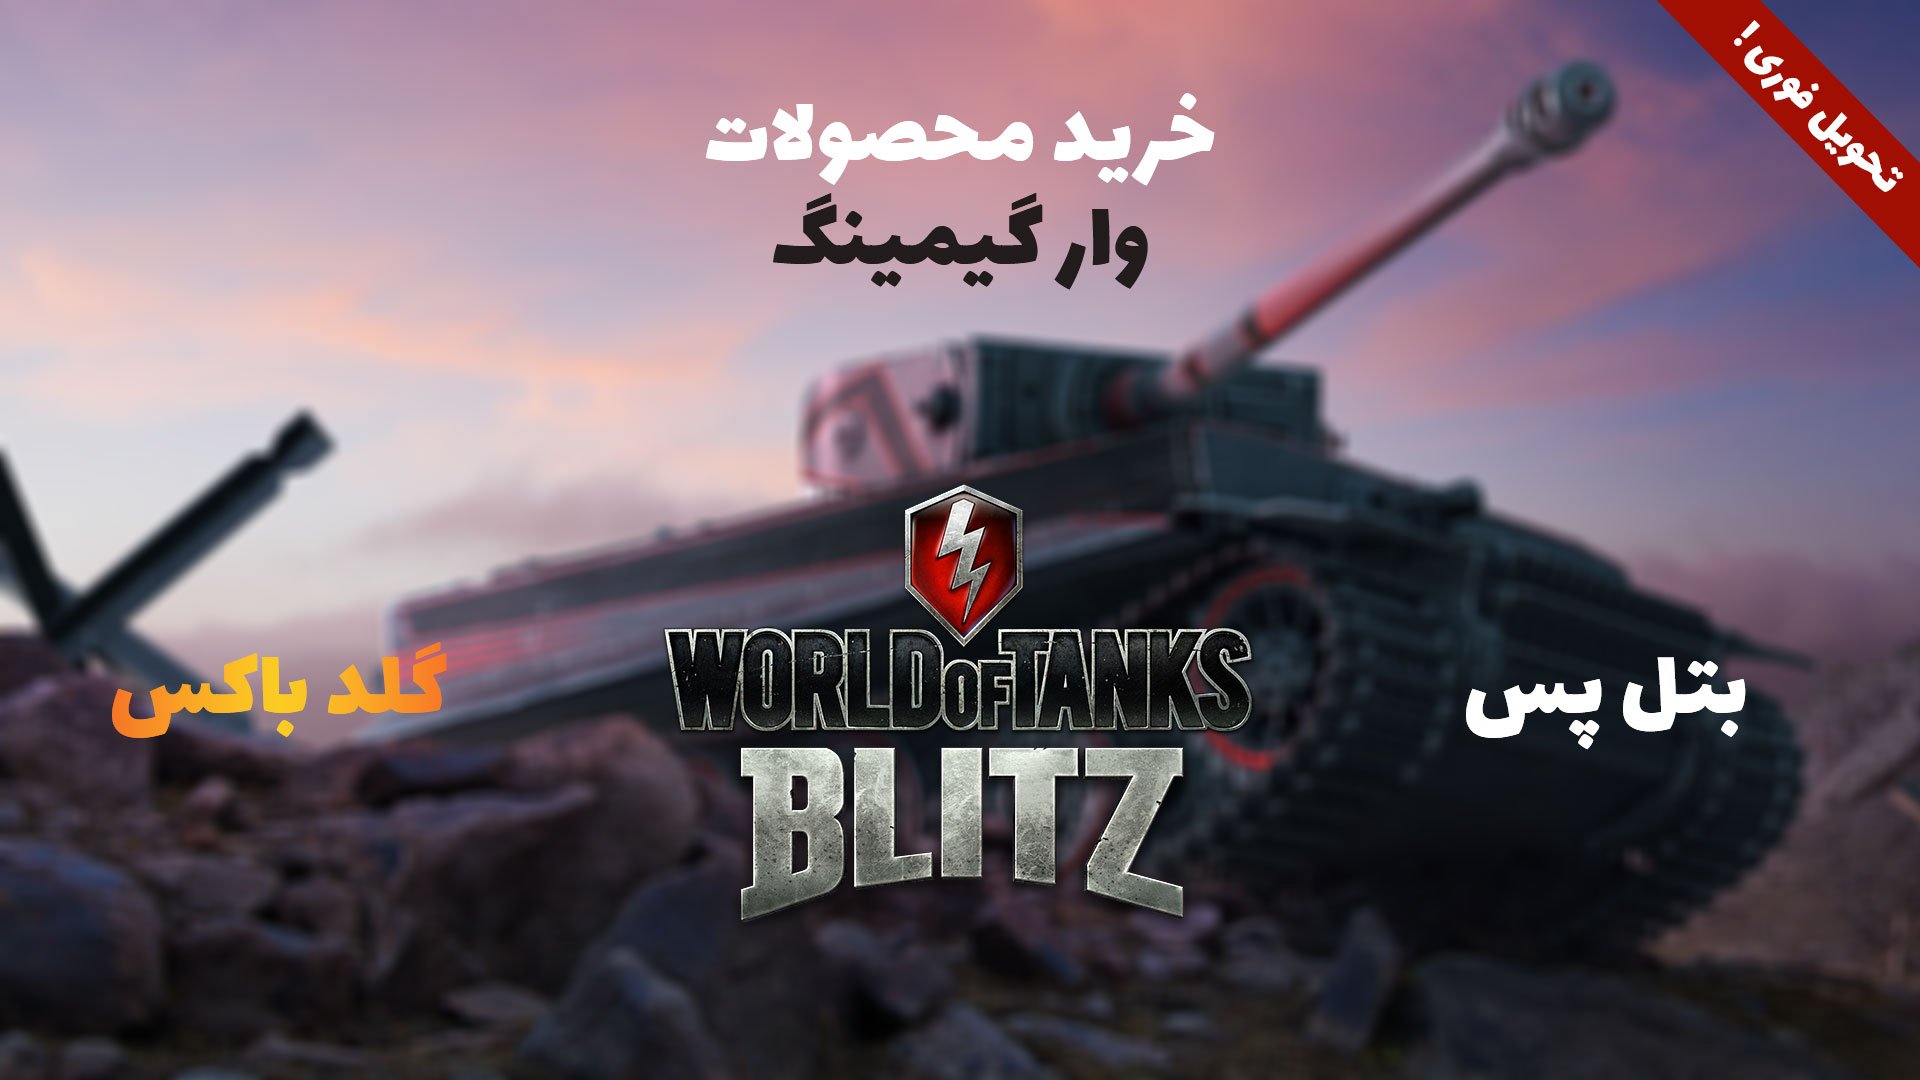 خرید بتل پس world of tanks blitz